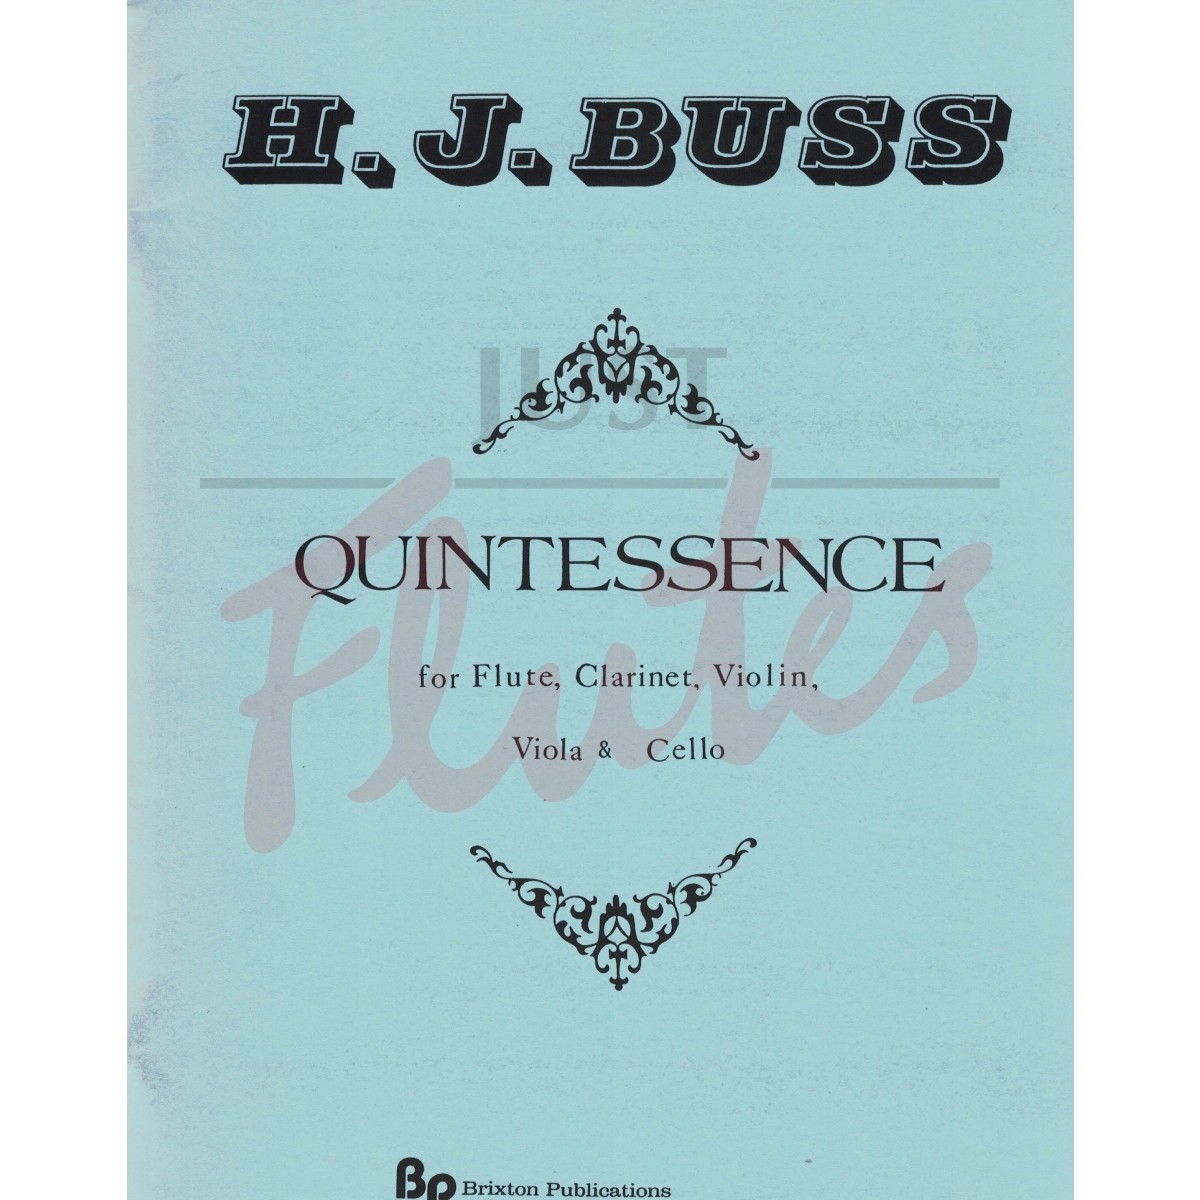 Quintessence for Flute, Clarinet, Violin, Viola and Cello